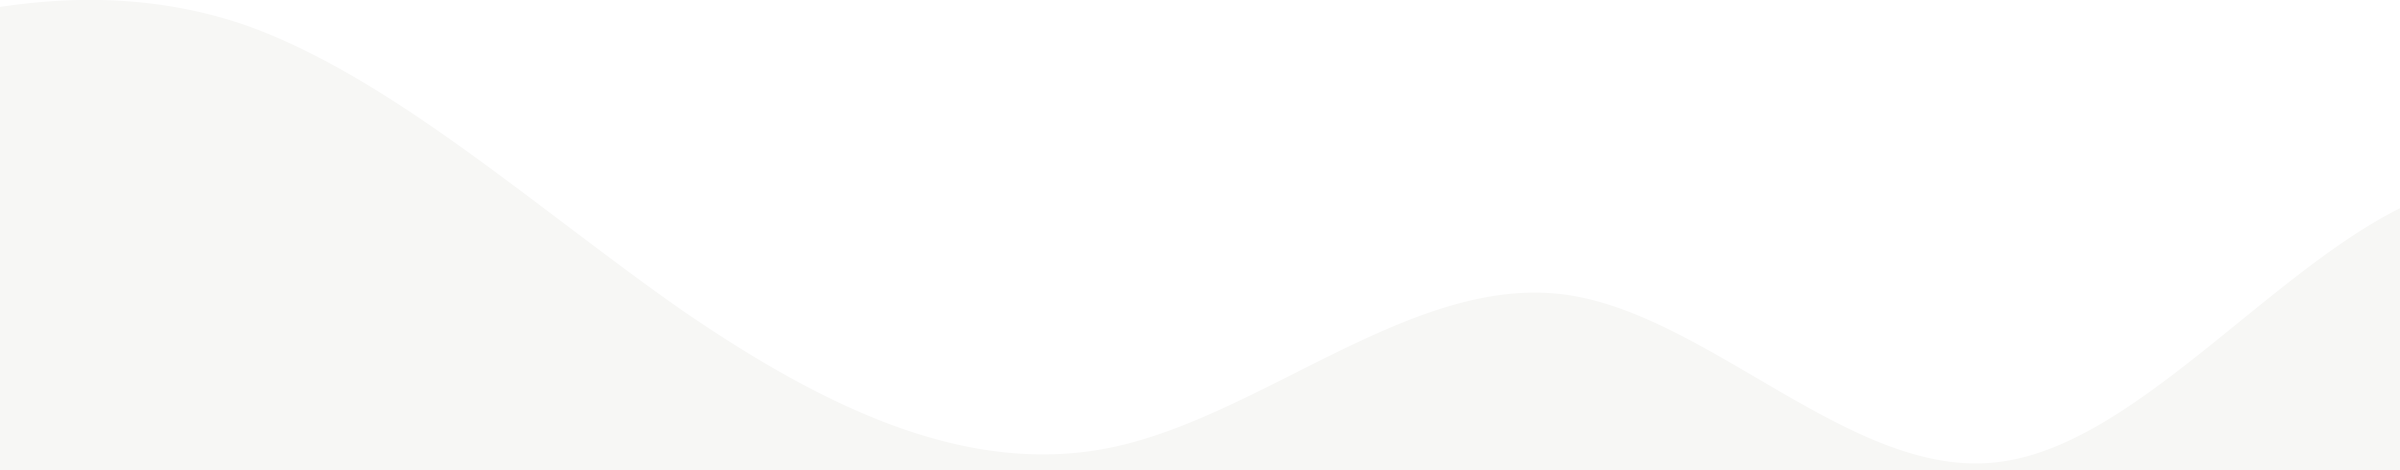 Wave_White_bottom_left_shape_01